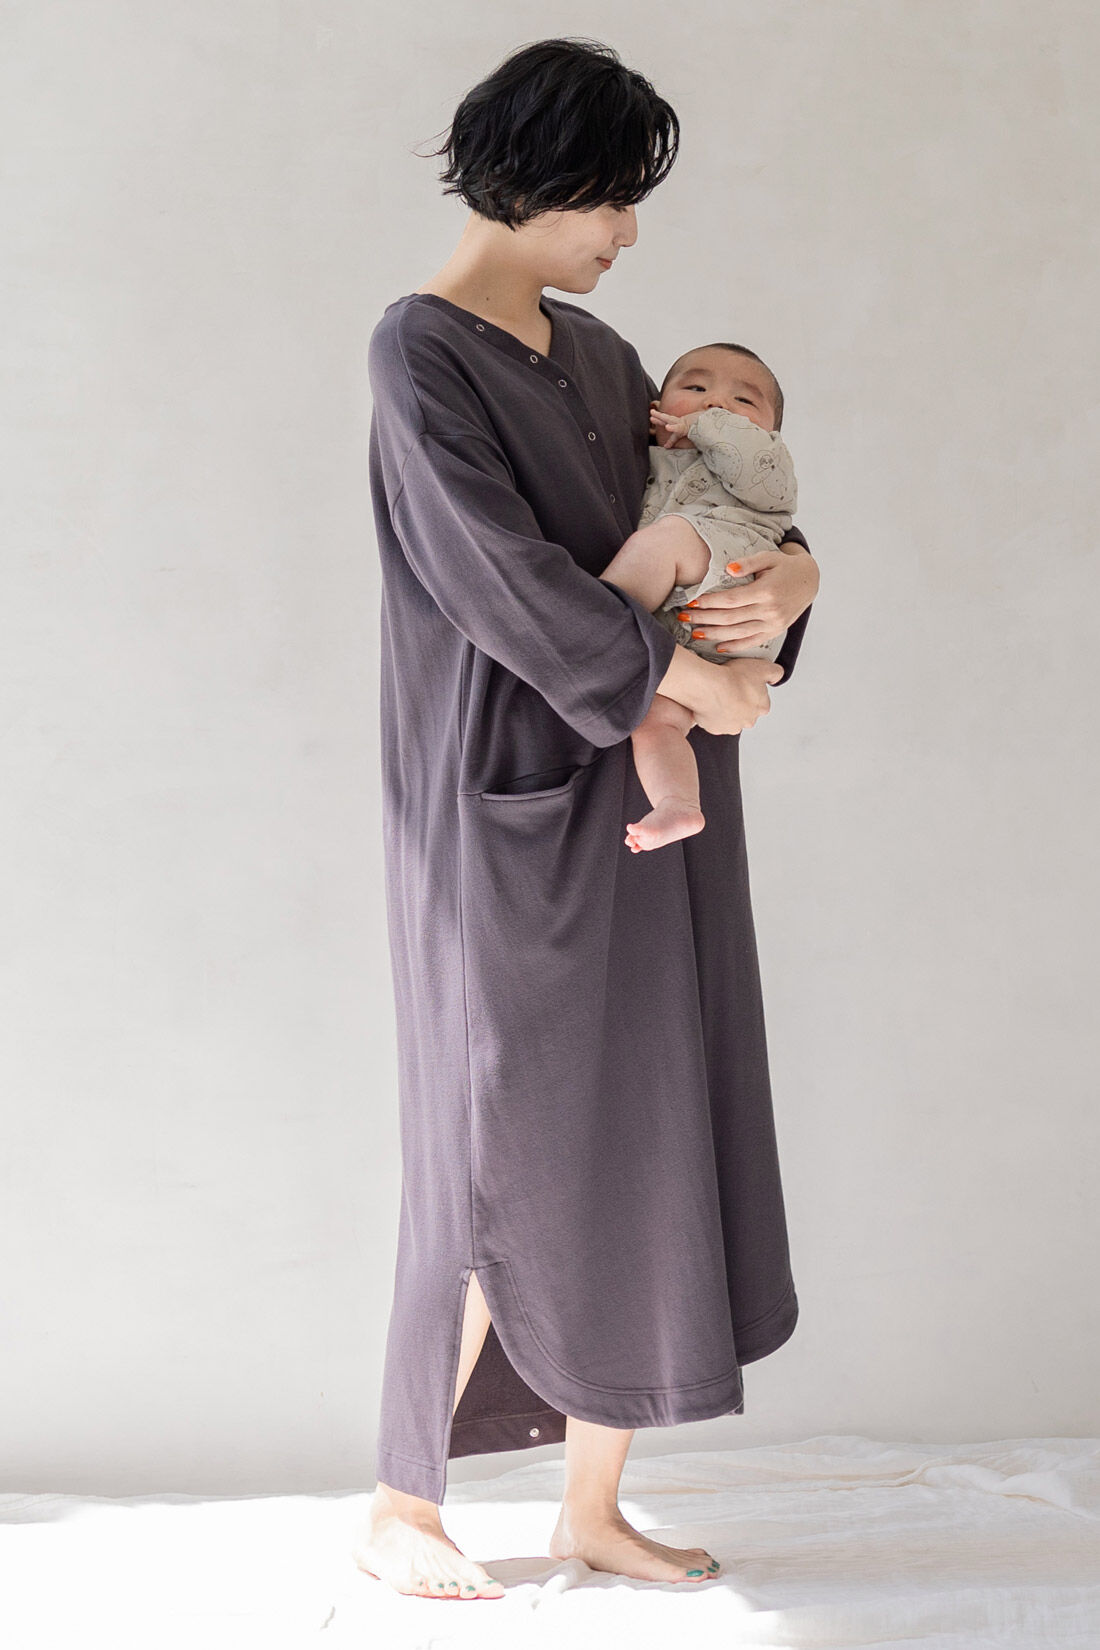 フェリシモMama|Moredde　お風呂あがりにあわてない！ママの時短を叶える　バスローブパイルワンピース〈チャコールグレー〉|長めの袖丈で赤ちゃんを抱っこしたときに安心。